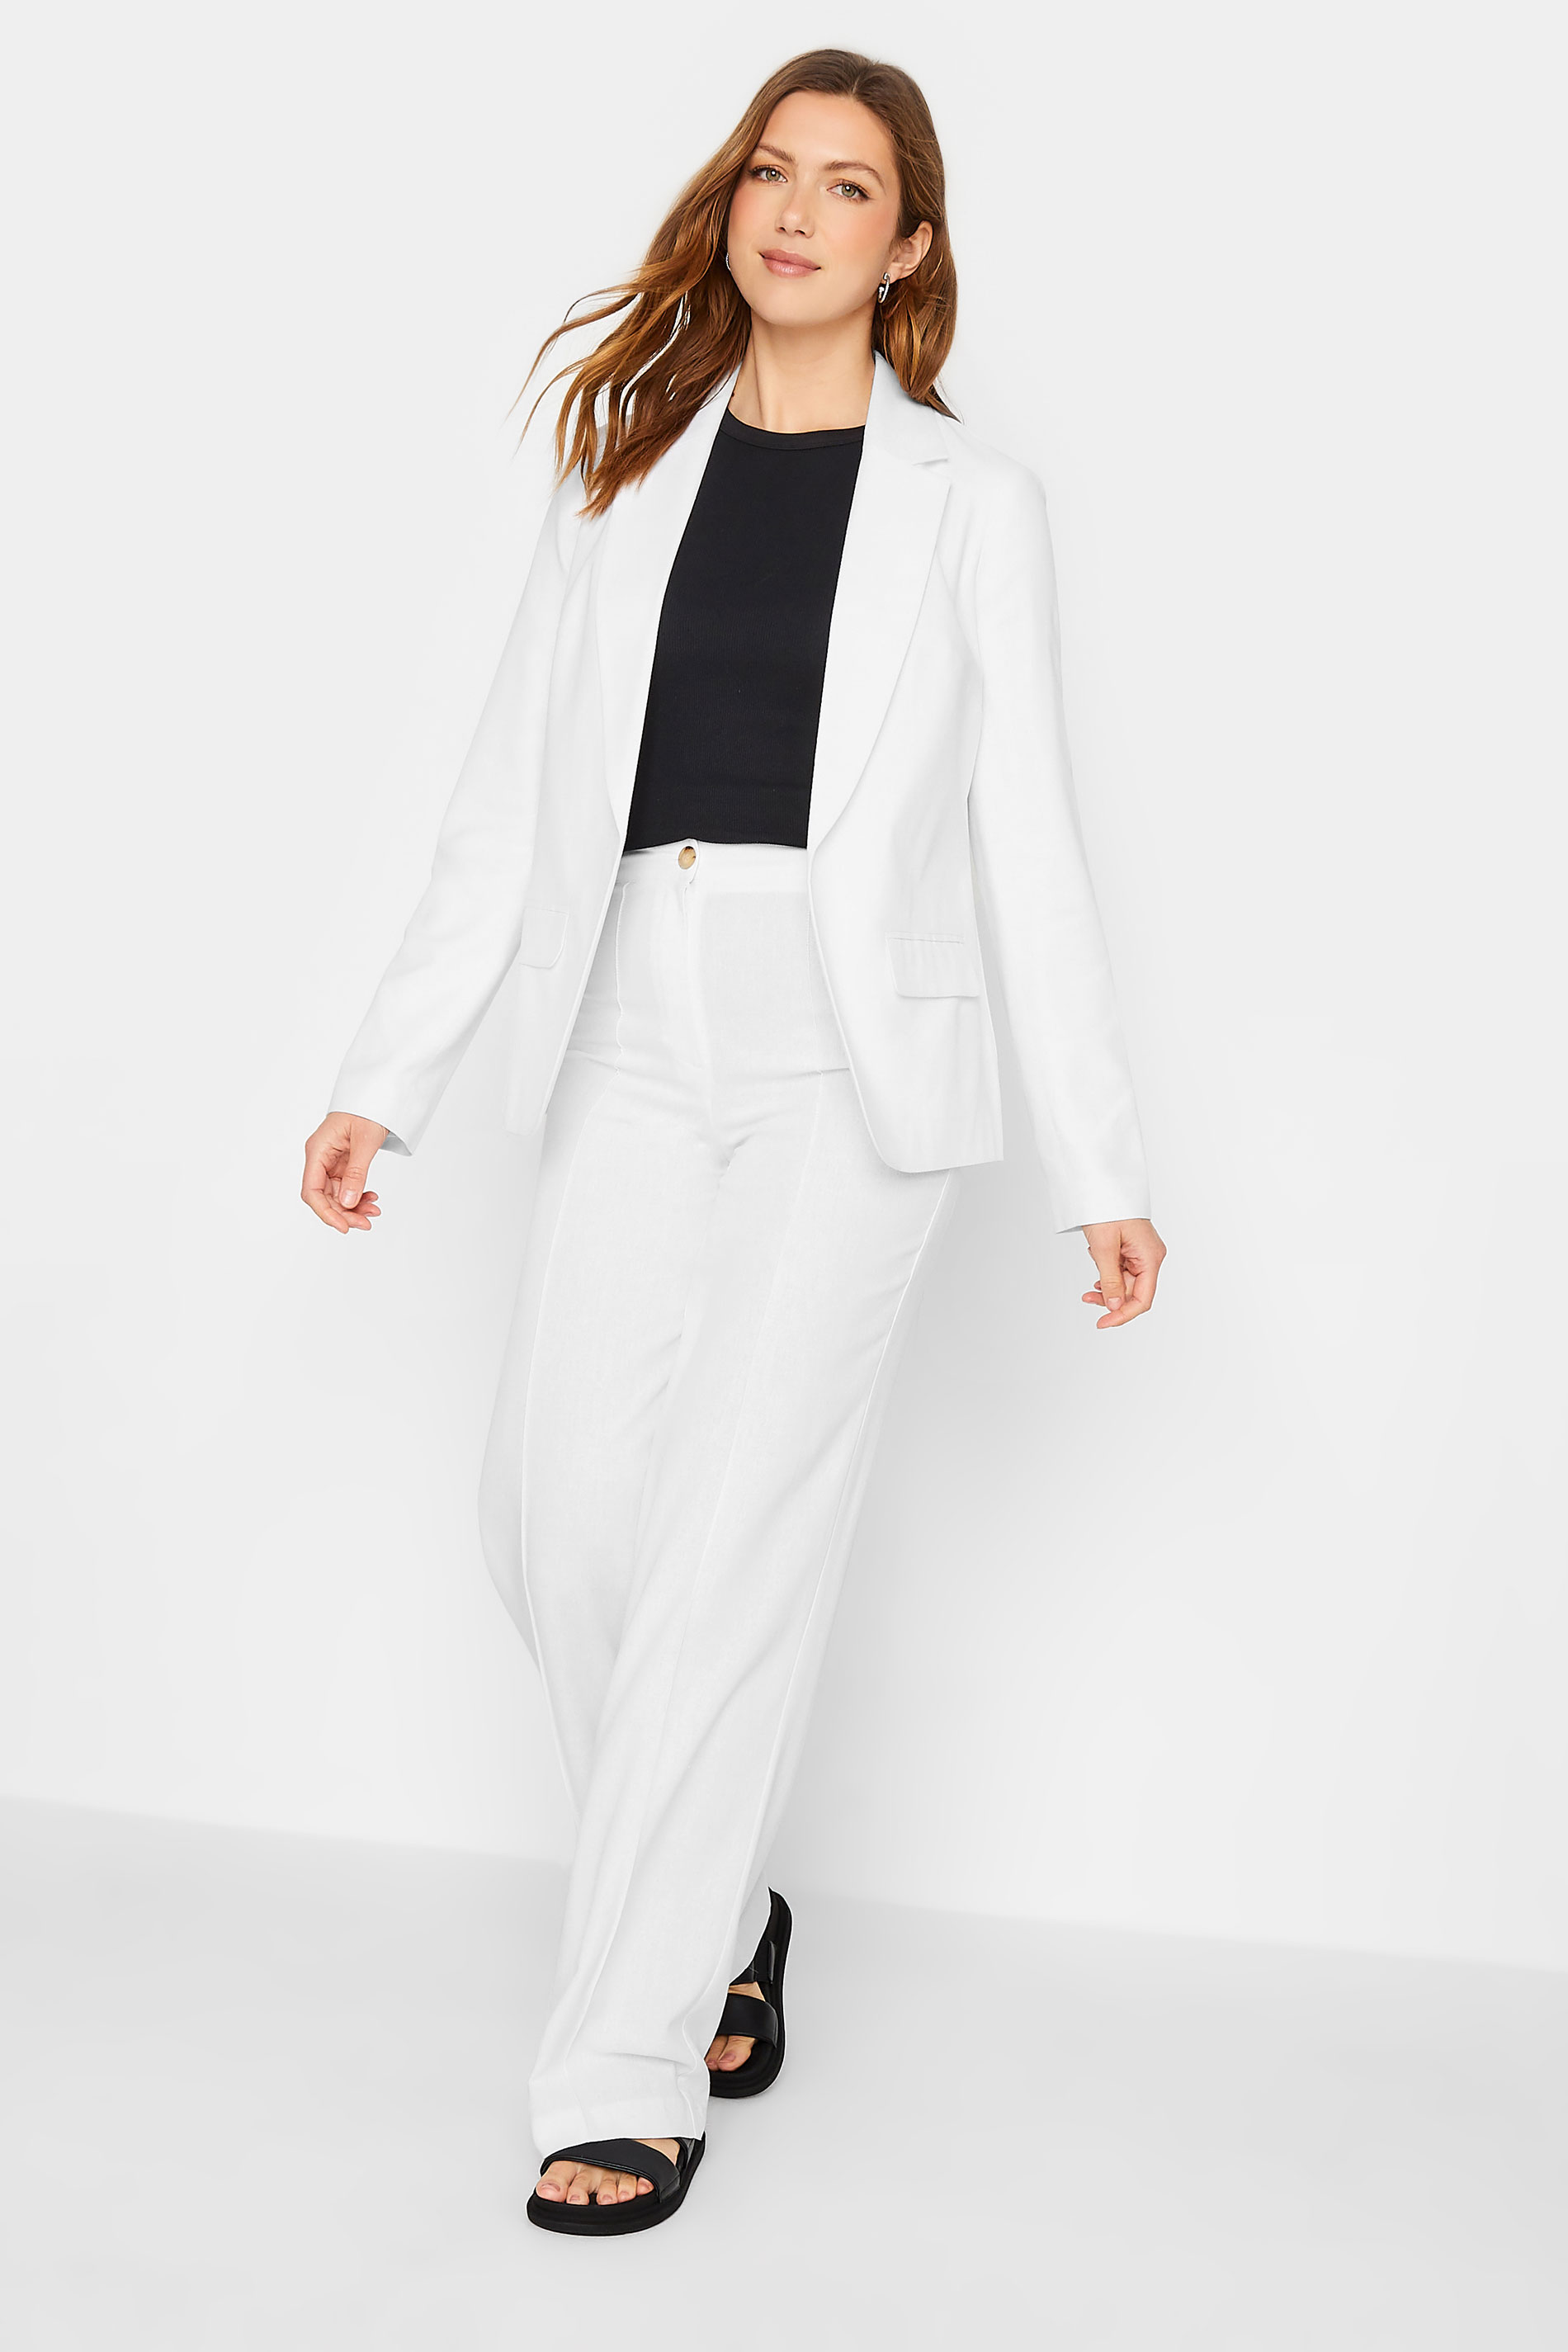 LTS Tall Womens White Linen Blazer Jacket | Long Tall Sally  3